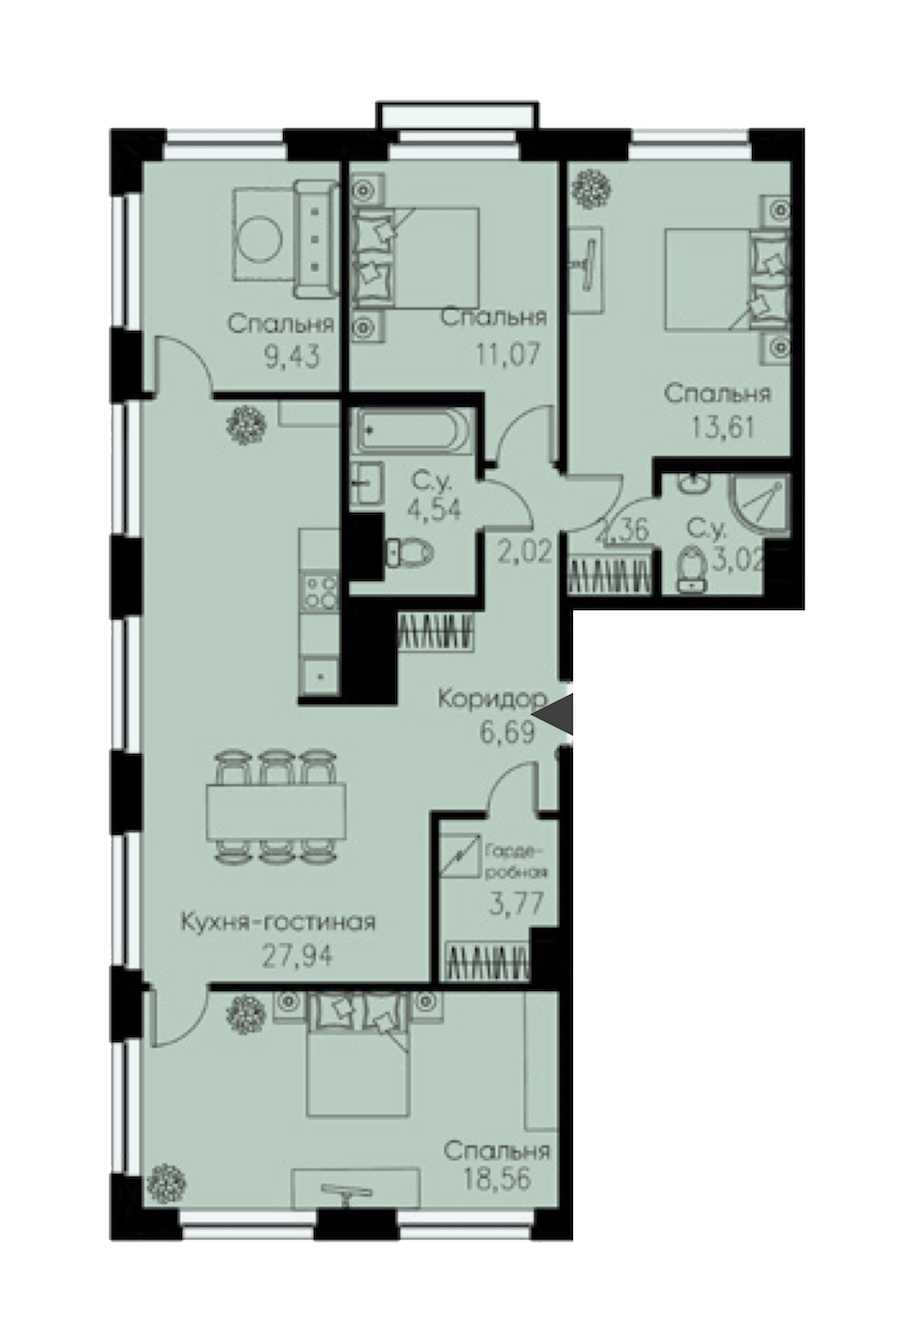 Четырехкомнатная квартира в : площадь 103.01 м2 , этаж: 11 – купить в Санкт-Петербурге